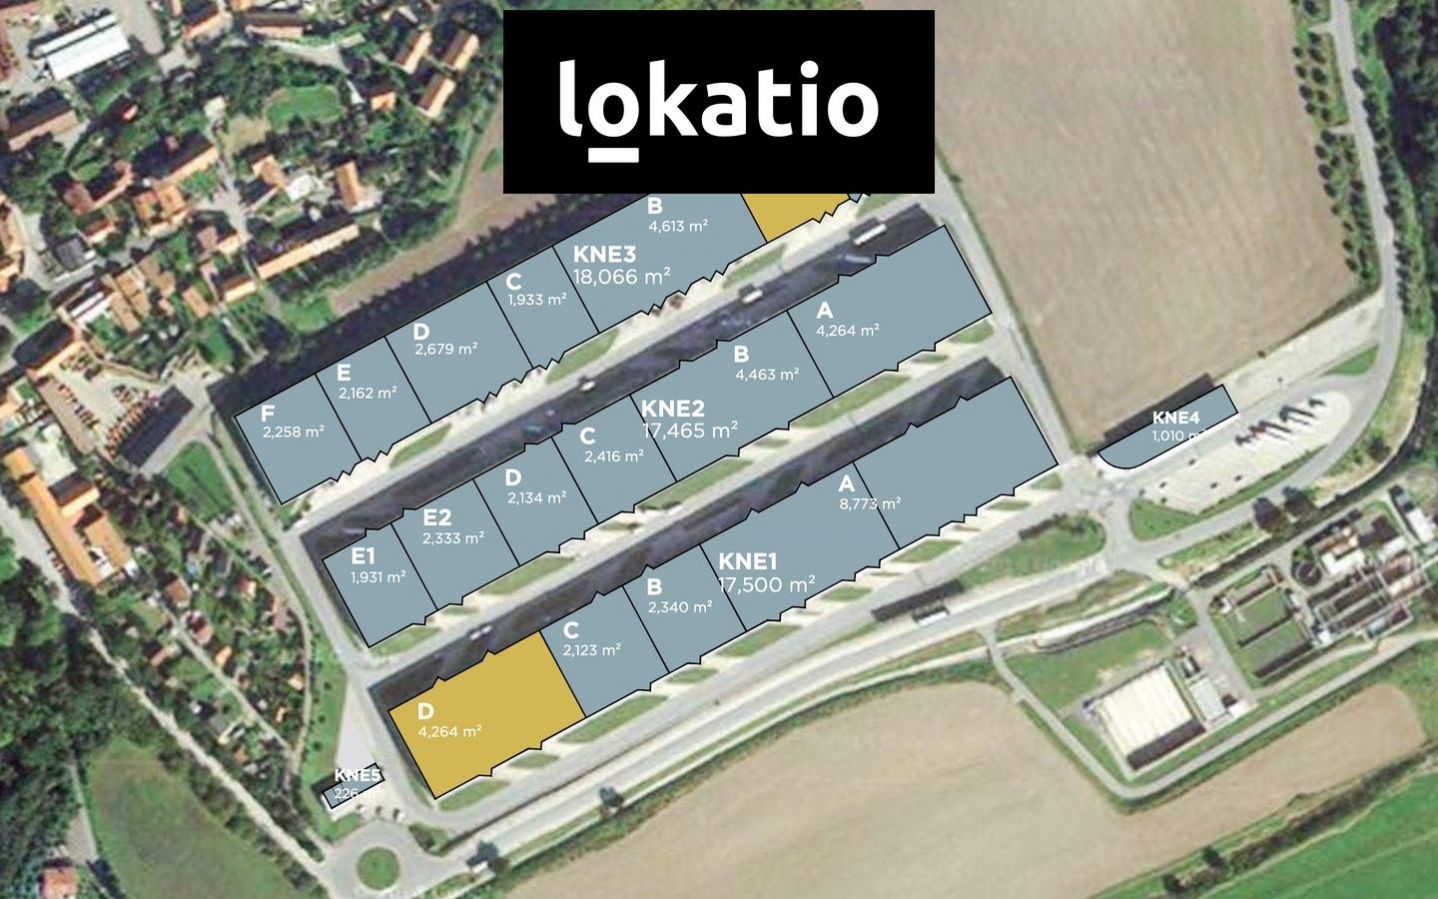 Pronájem: Skladové a logistické prostory v blízkosti letiště, Ruzyně, D7, D6, obrázek č. 3